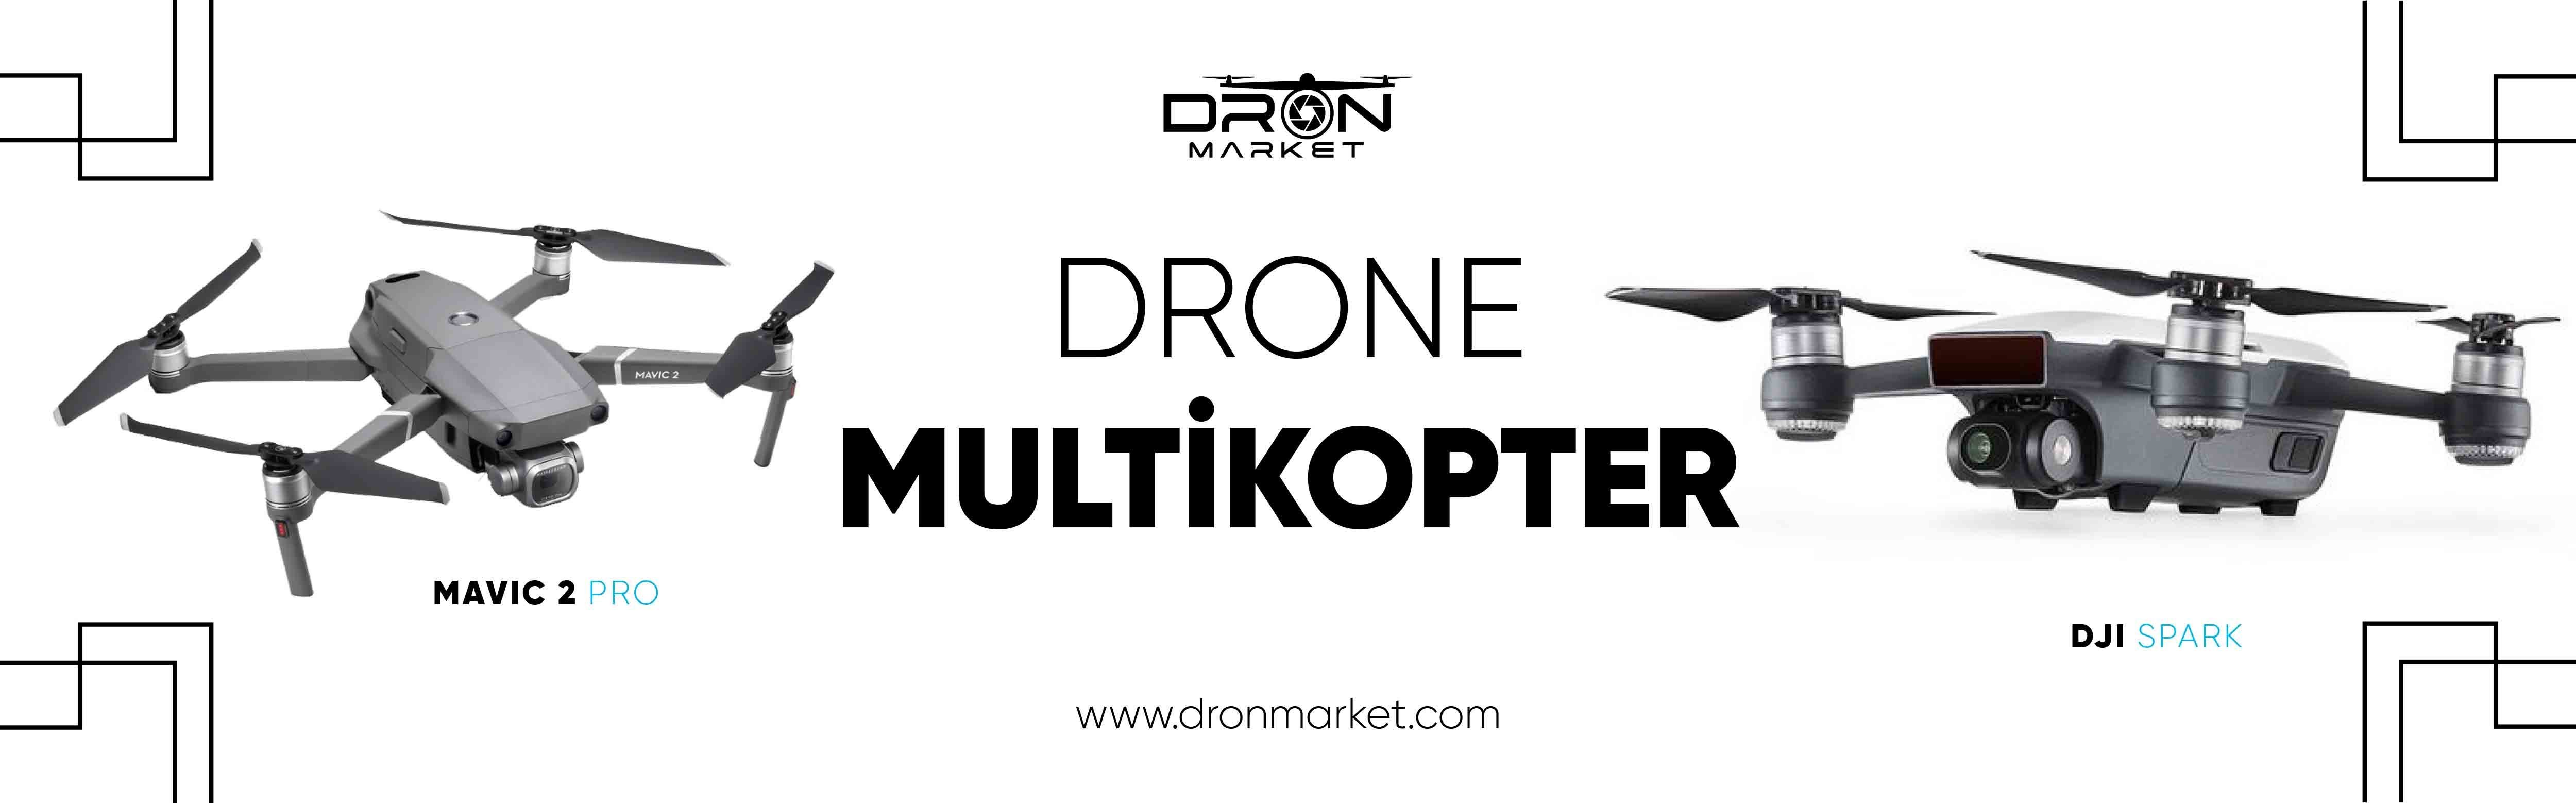 drone multicopter est avec vous sur dronmarket.com